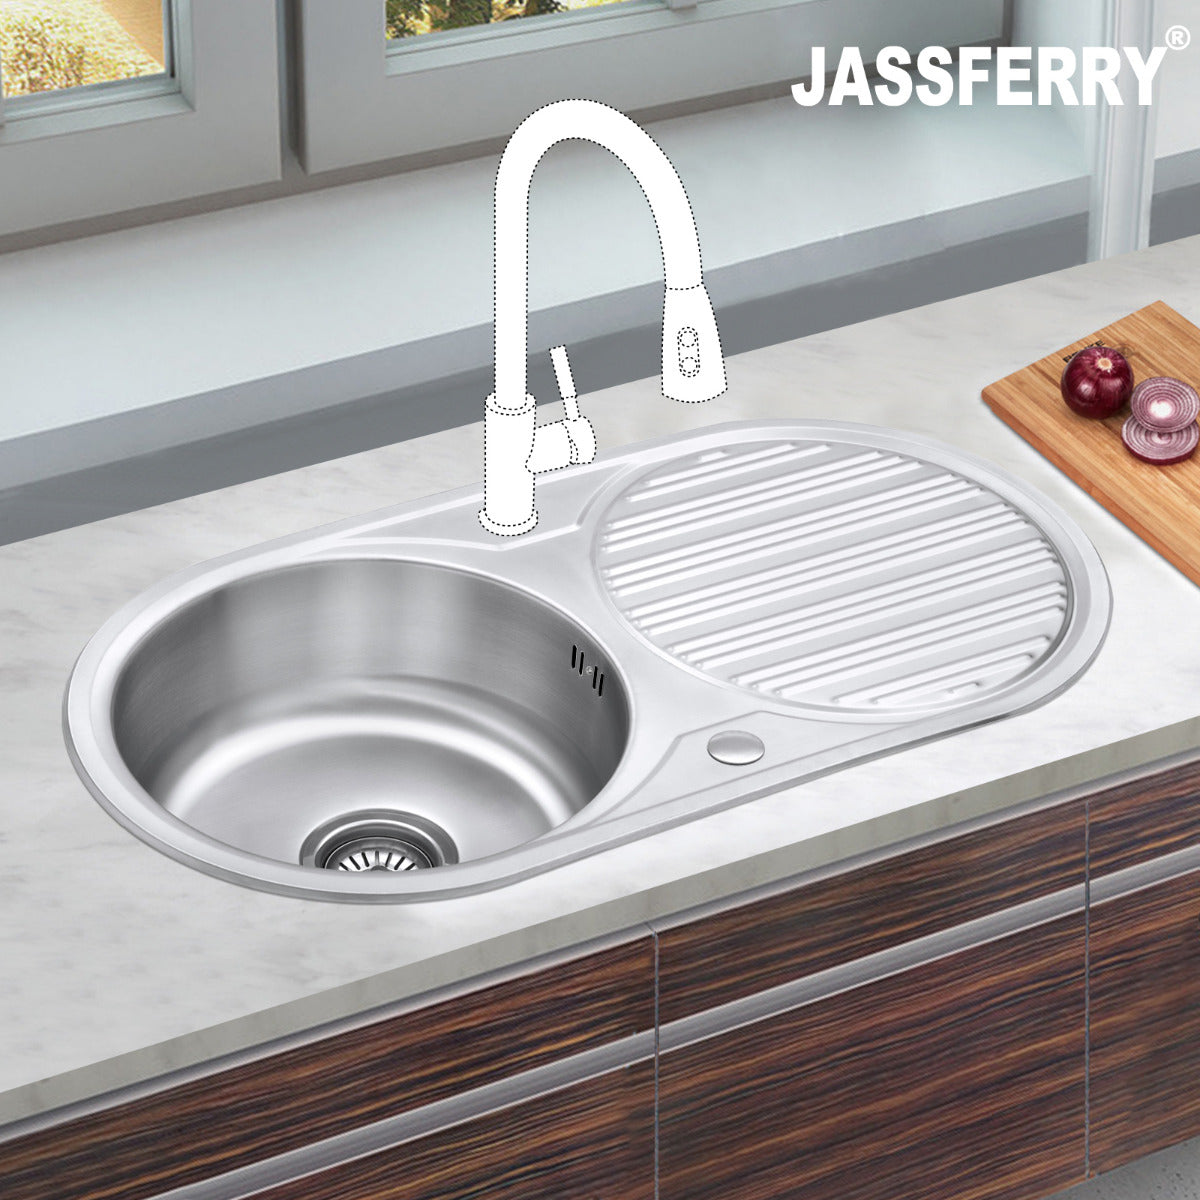 JassferryJASSFERRY Kitchen Sink Stainless Steel Single Round Bowl Reversible Circle DrainerKitchen Sinks